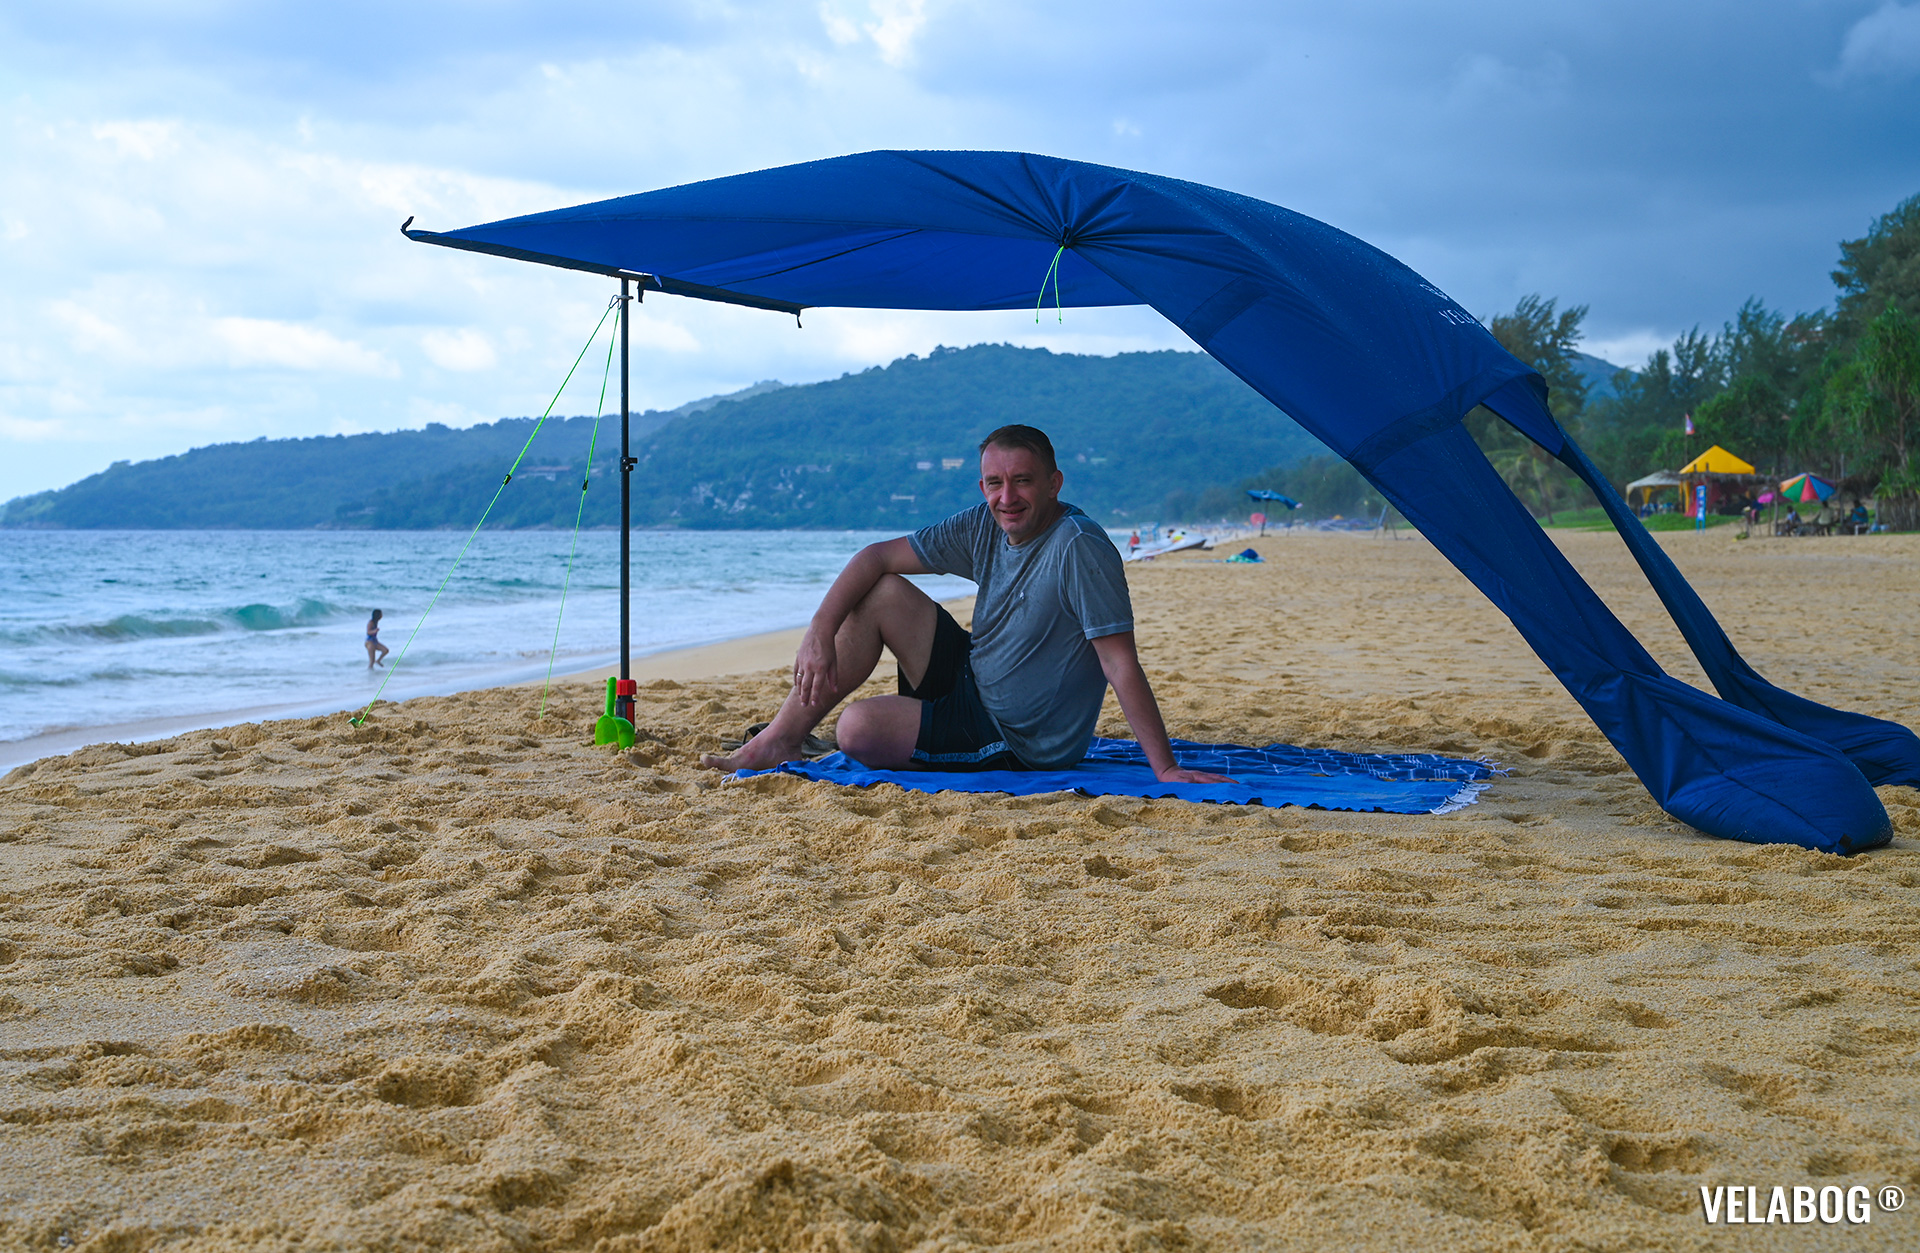 Strand Sonnensegel Strandzelt Velabog Breeze, nachtblau. Bester Sonnenschutz Strand. Test in Thailand auch bei einem Regenschauer. Beste Alternative zu Strandschirmen, Strandzelten und Strandmuscheln. Aufbauoption beim leichten bis starken Wind. Ansicht von der Seite. Personen.